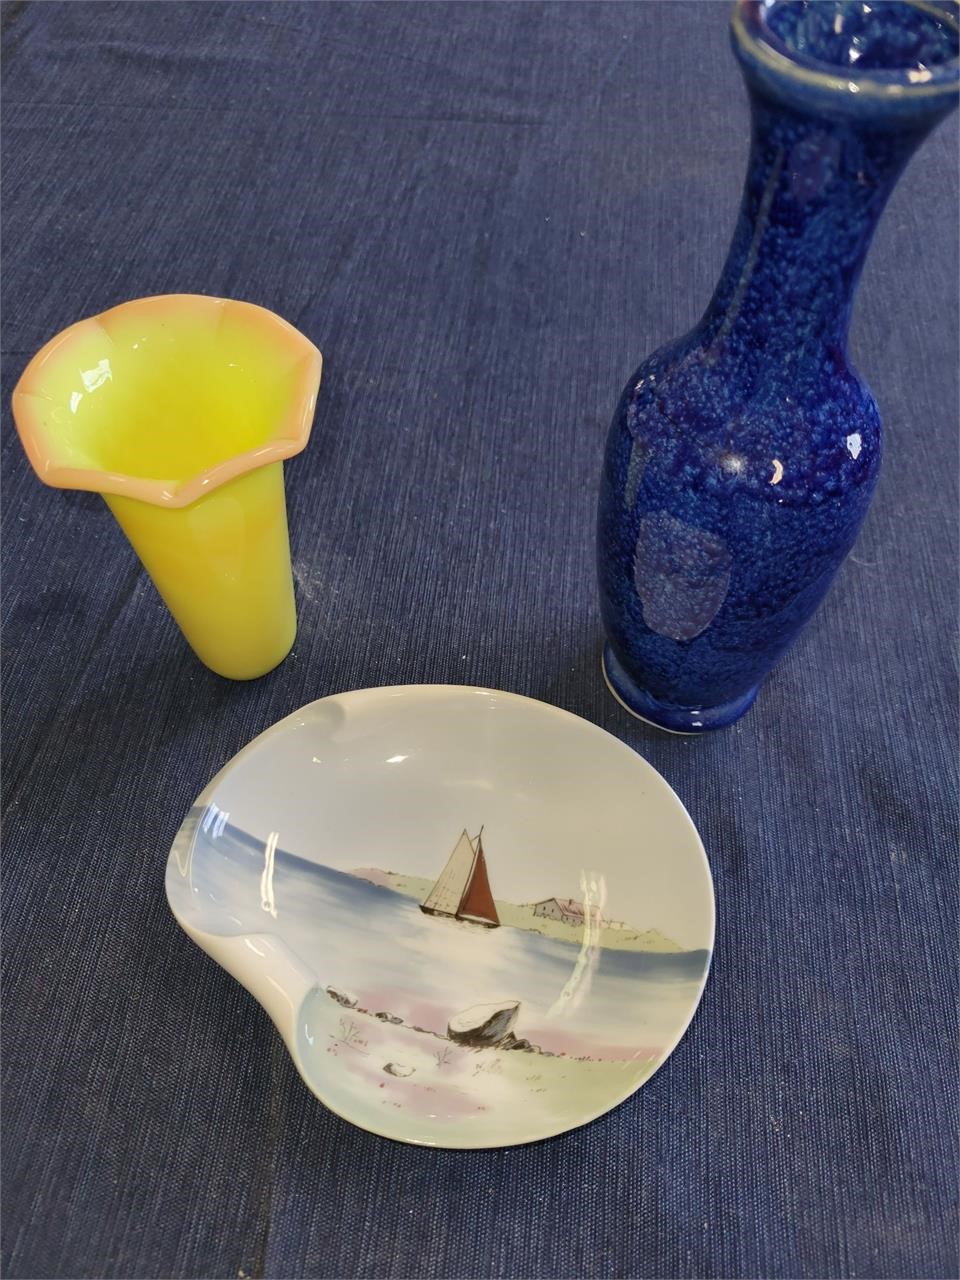 Blue Vase, Yellow Bud Vase, Decorative Dish